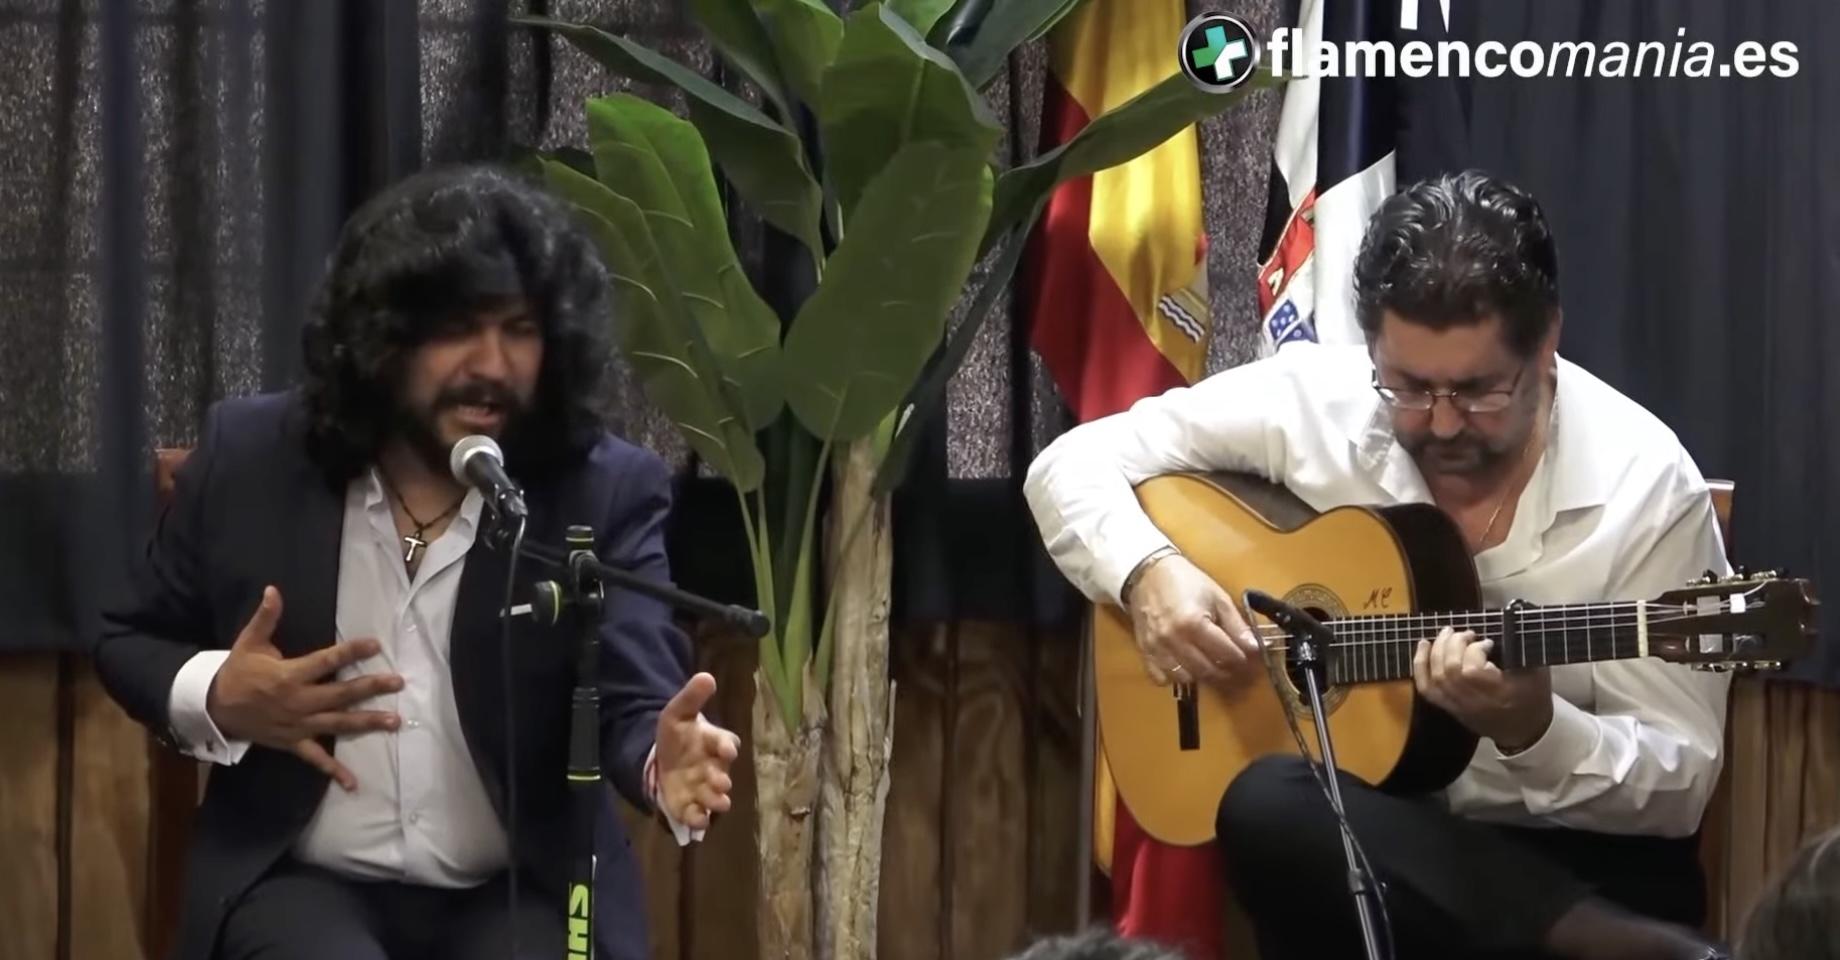 Flamencomanía TV: "Rancapino Chico y Antonio Higuero en la Tertulia Flamenca de Ceuta''